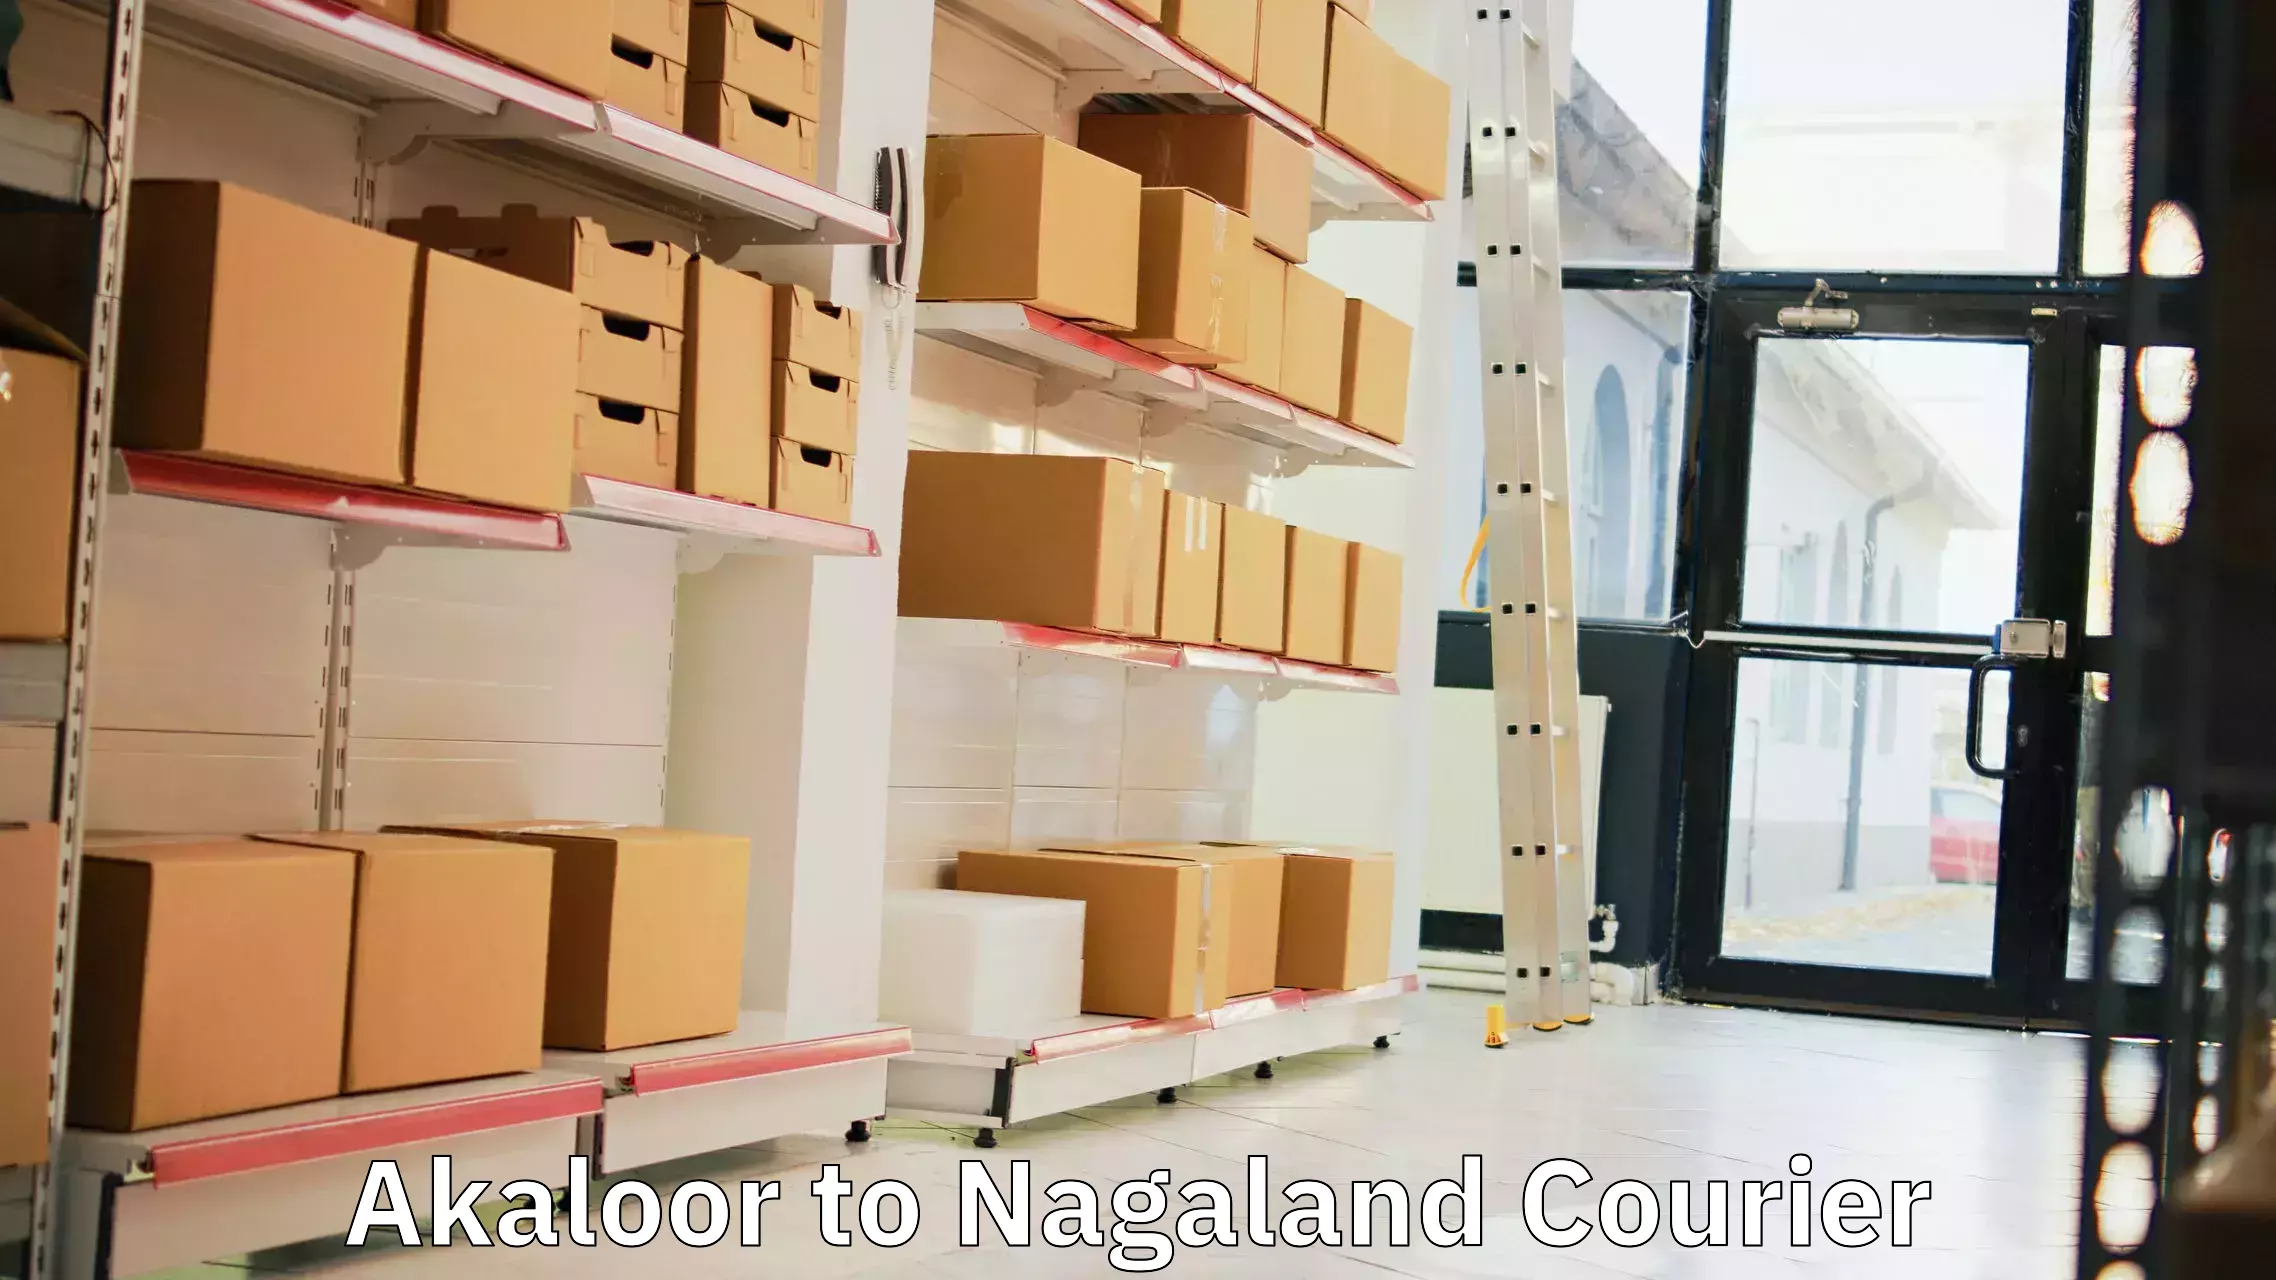 Door-to-door freight service Akaloor to Tuensang